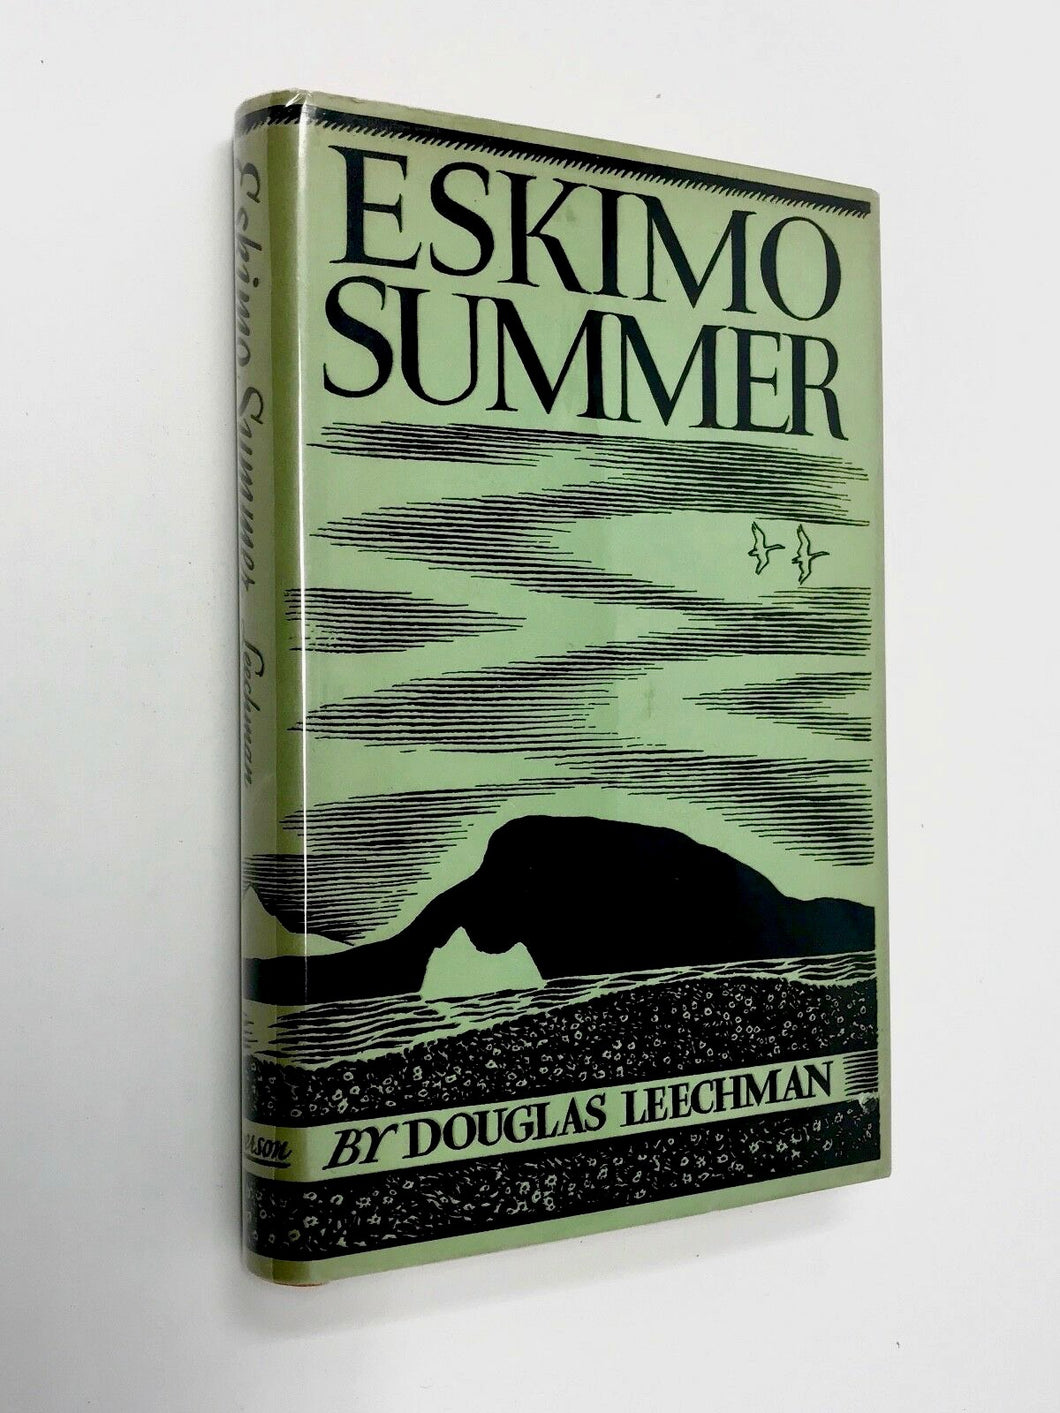 ESKIMO SUMMER - DOUGLAS LEECHMAN - RYERSON PRESS